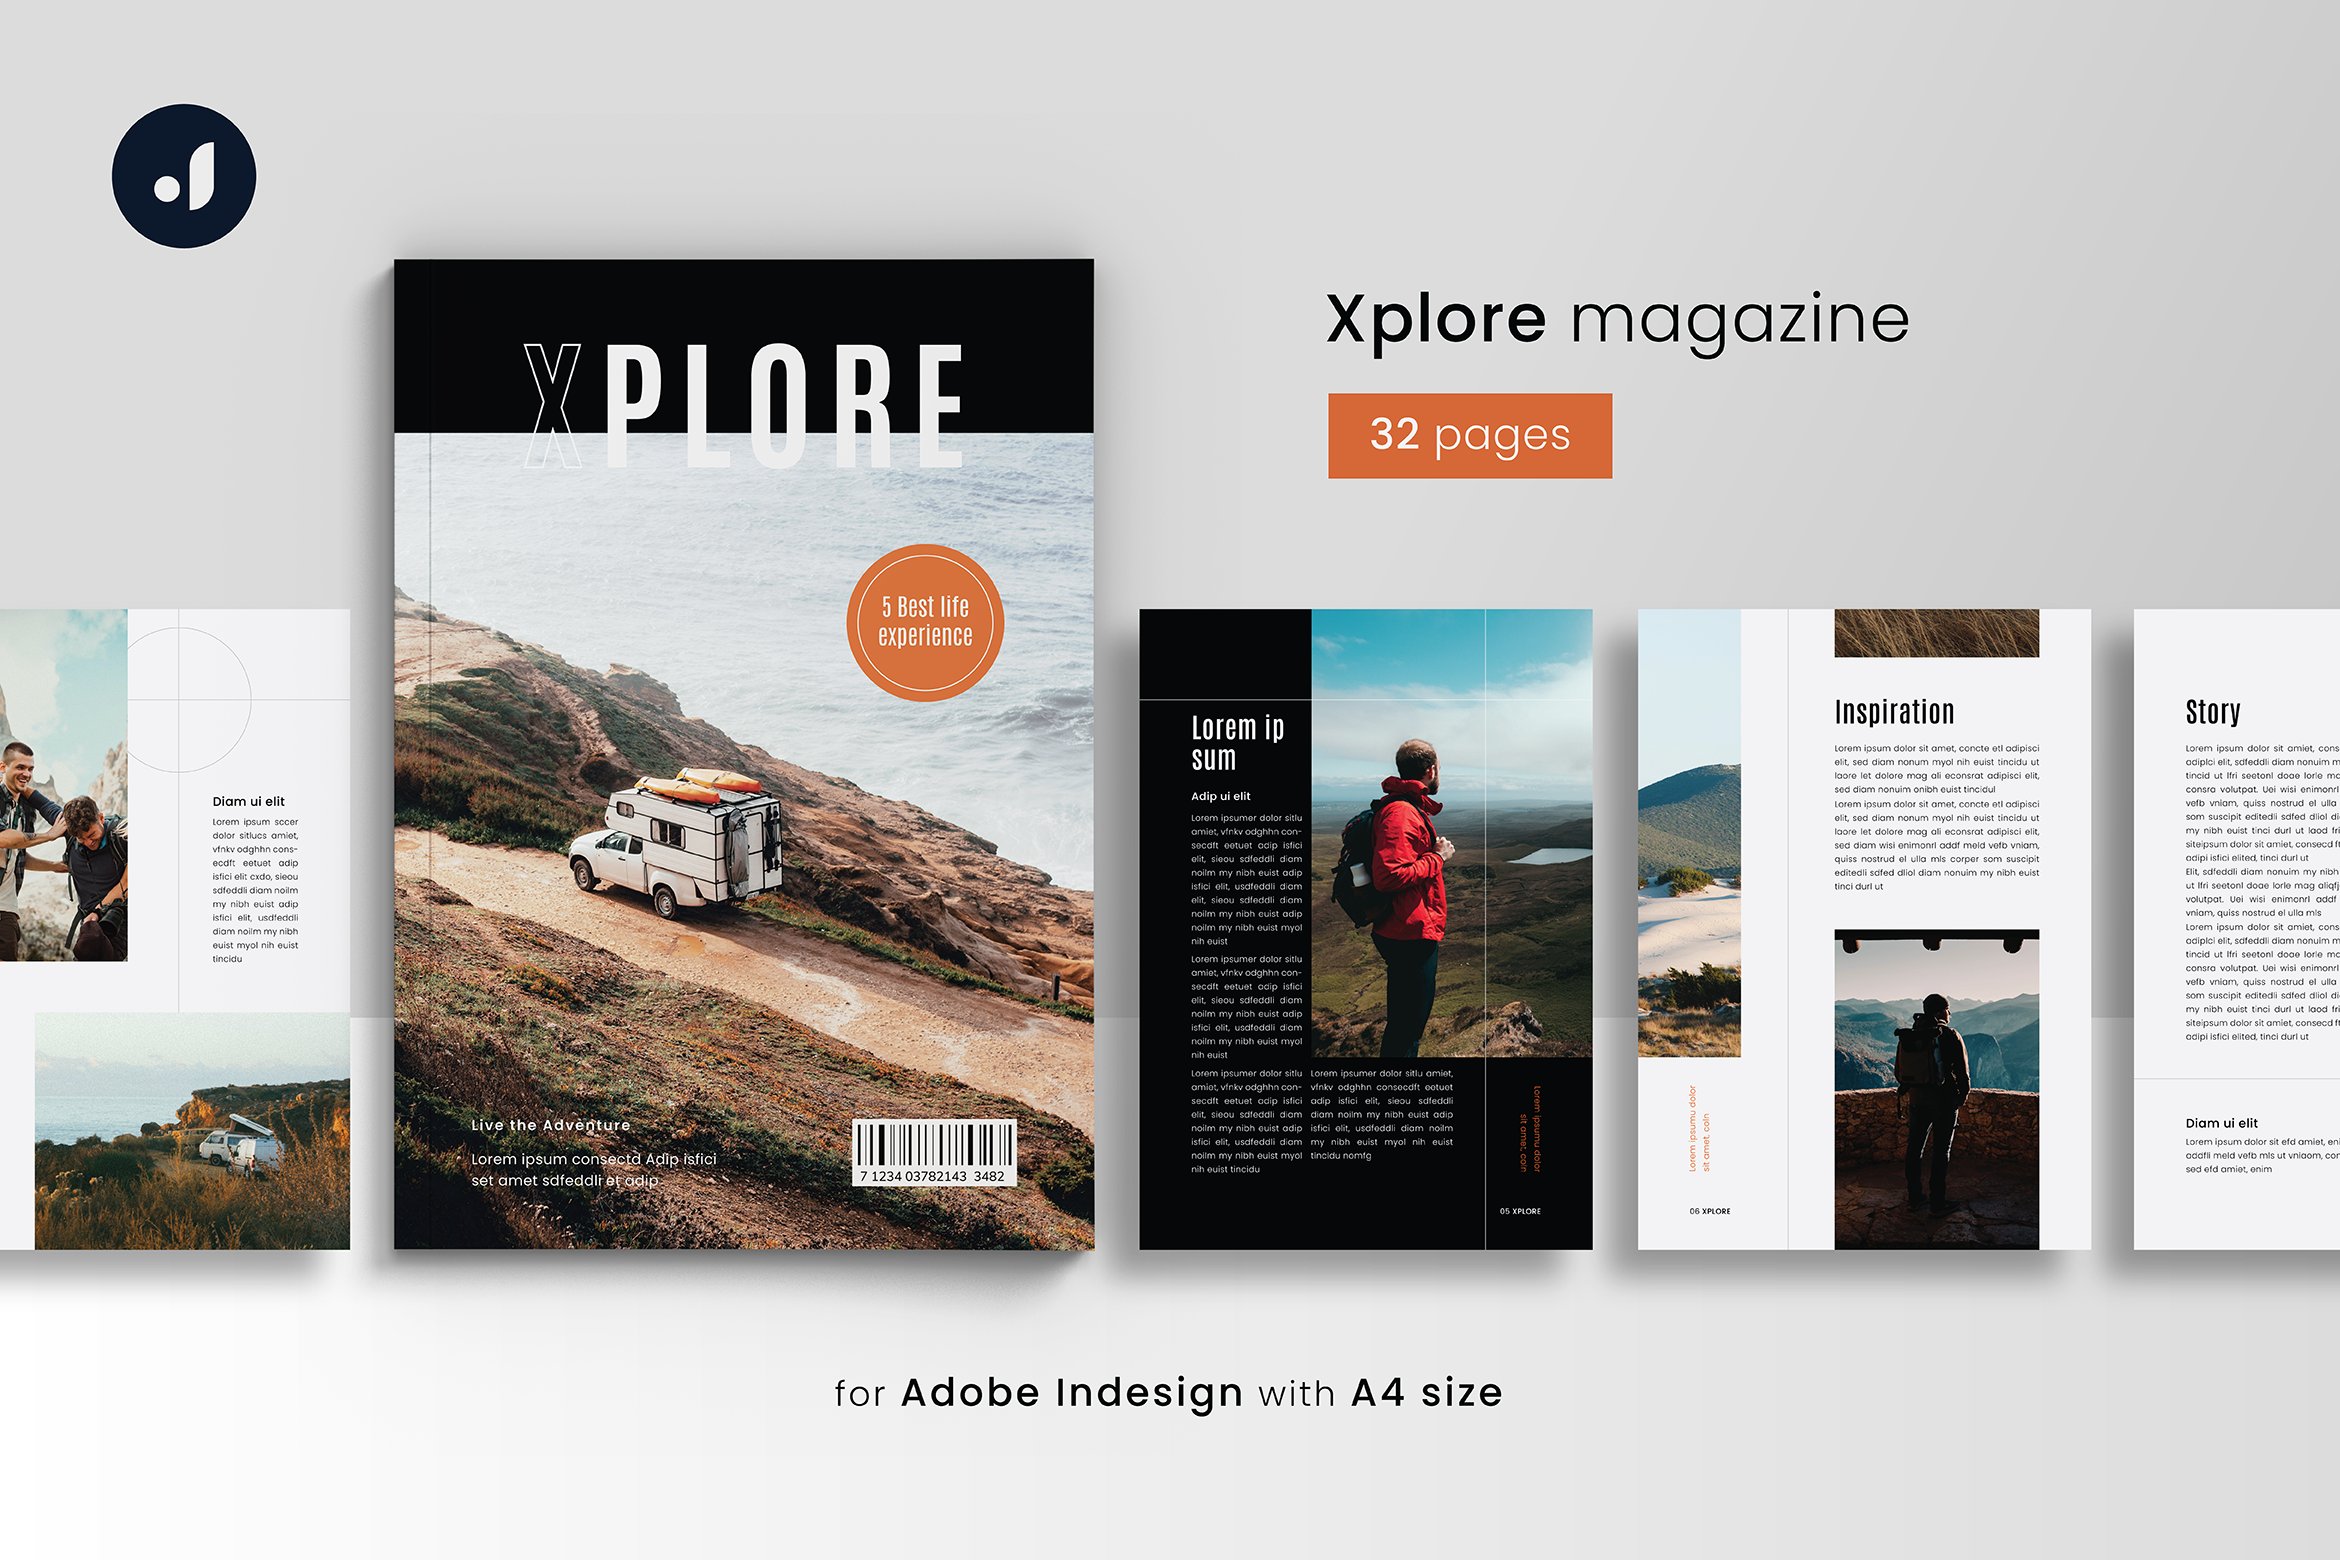 Xplore Magazine cover image.